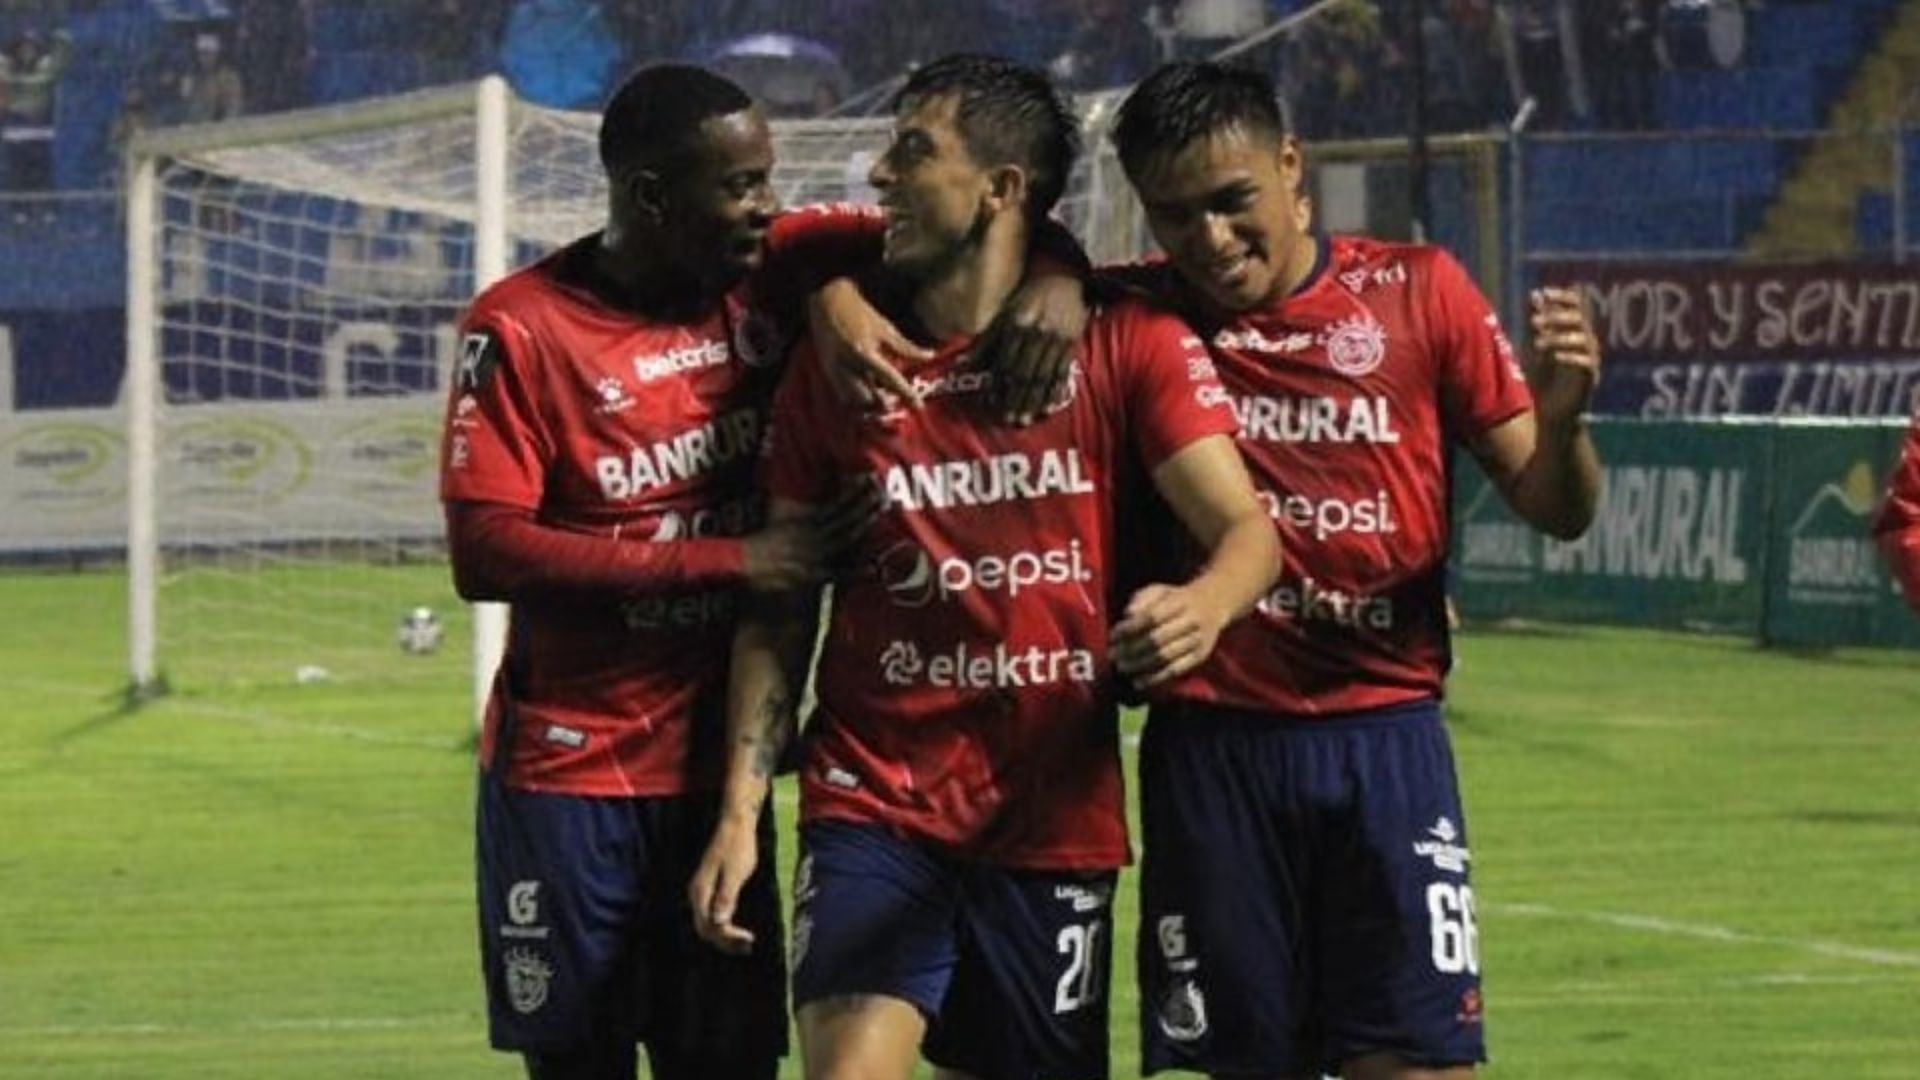 Los futbolistas de Xelajú celebran uno de sus dos goles ante Guastatoya en el único partido de la jornada 11 disputado el sábado 7 de octubre en el Mario Camposeco. (Foto Prensa Libre: Xelajú/Facebook)